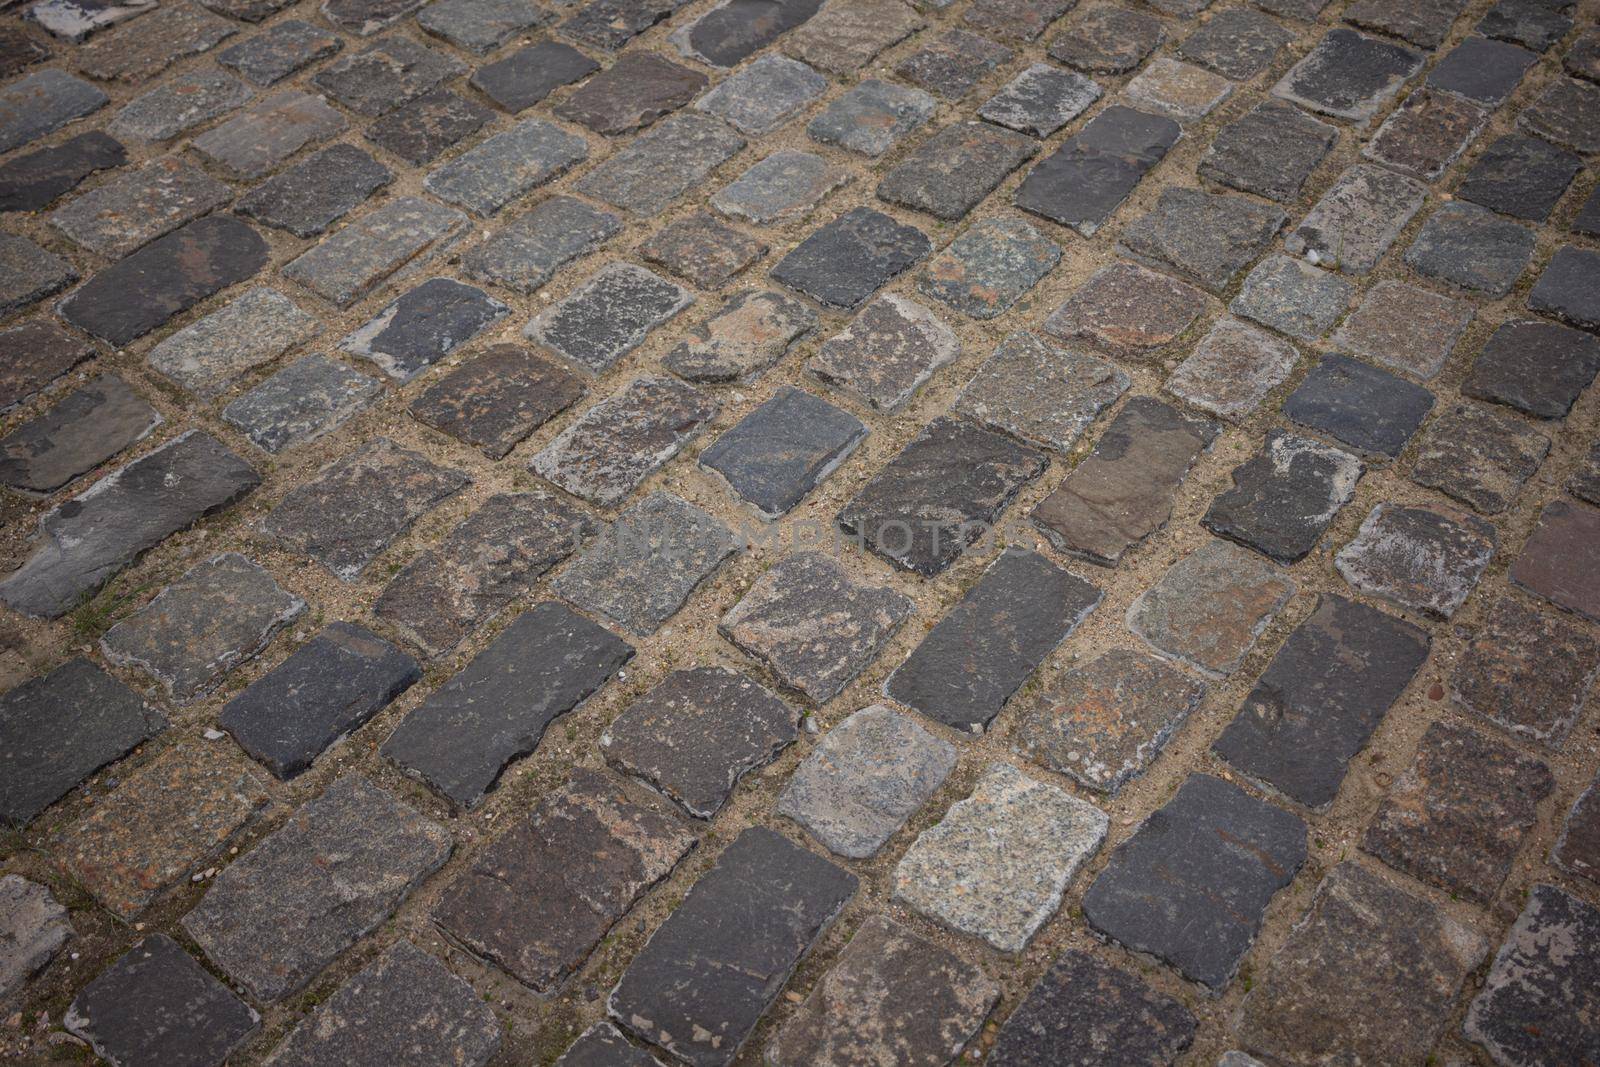 A close up of a brick road by SorokinNikita